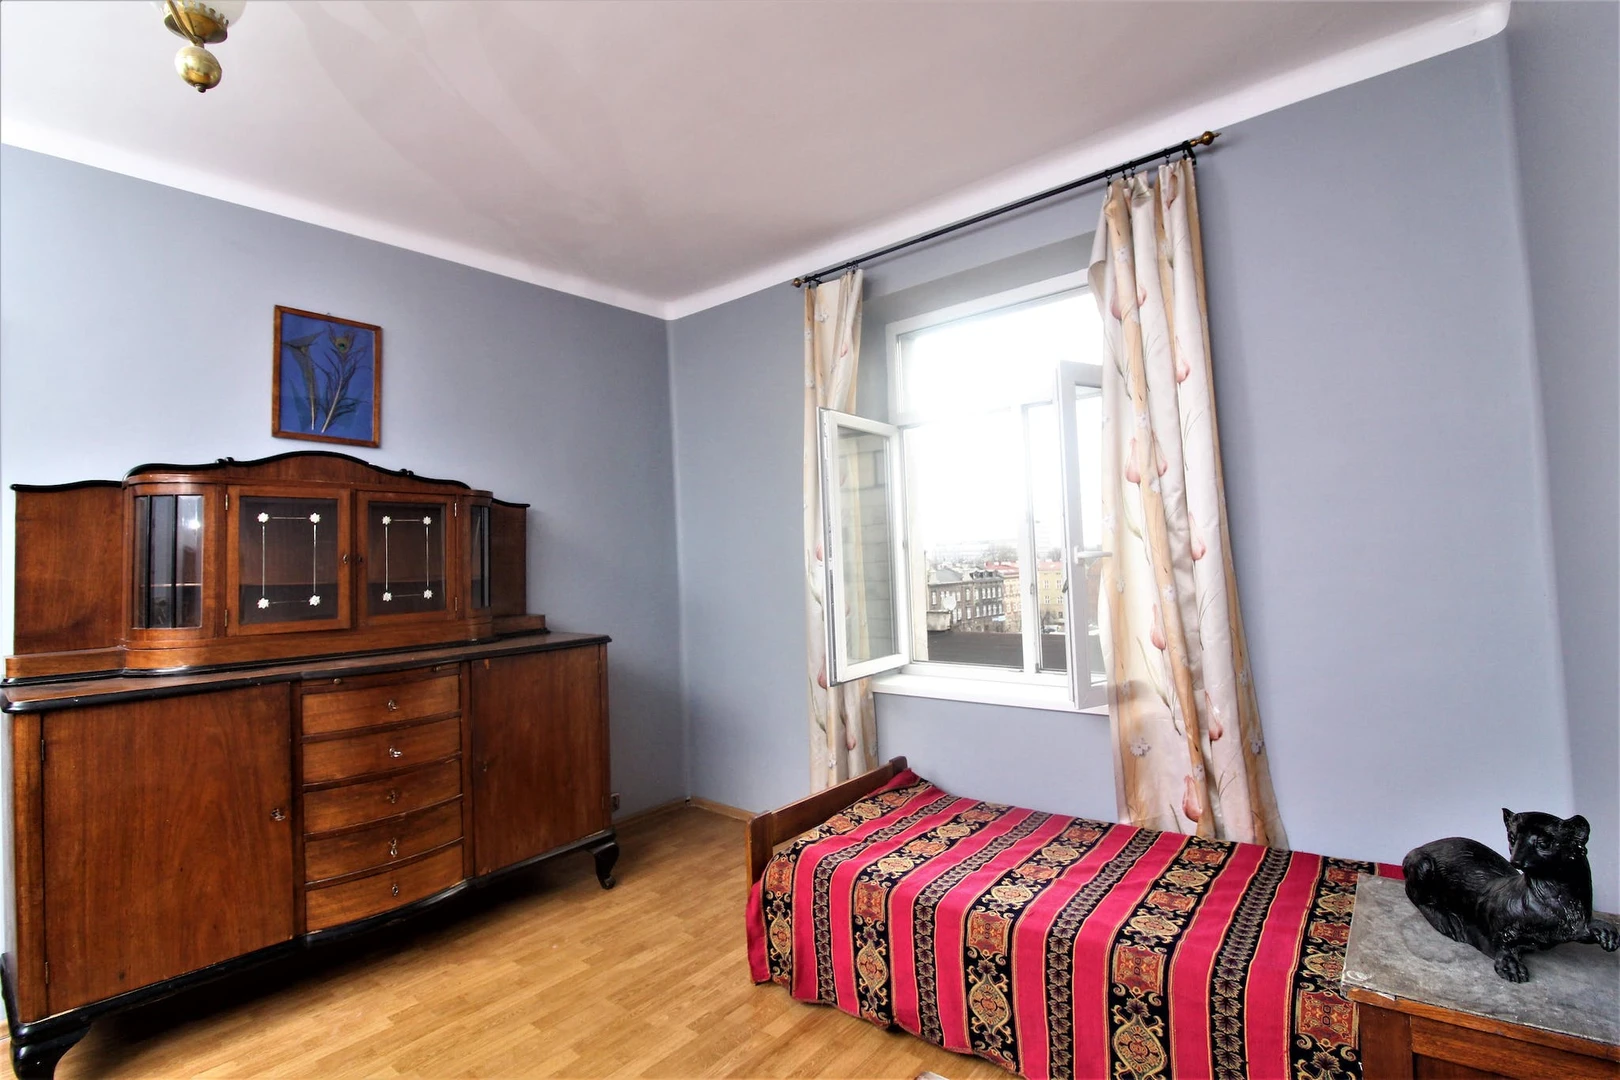 Monatliche Vermietung von Zimmern in Krakau